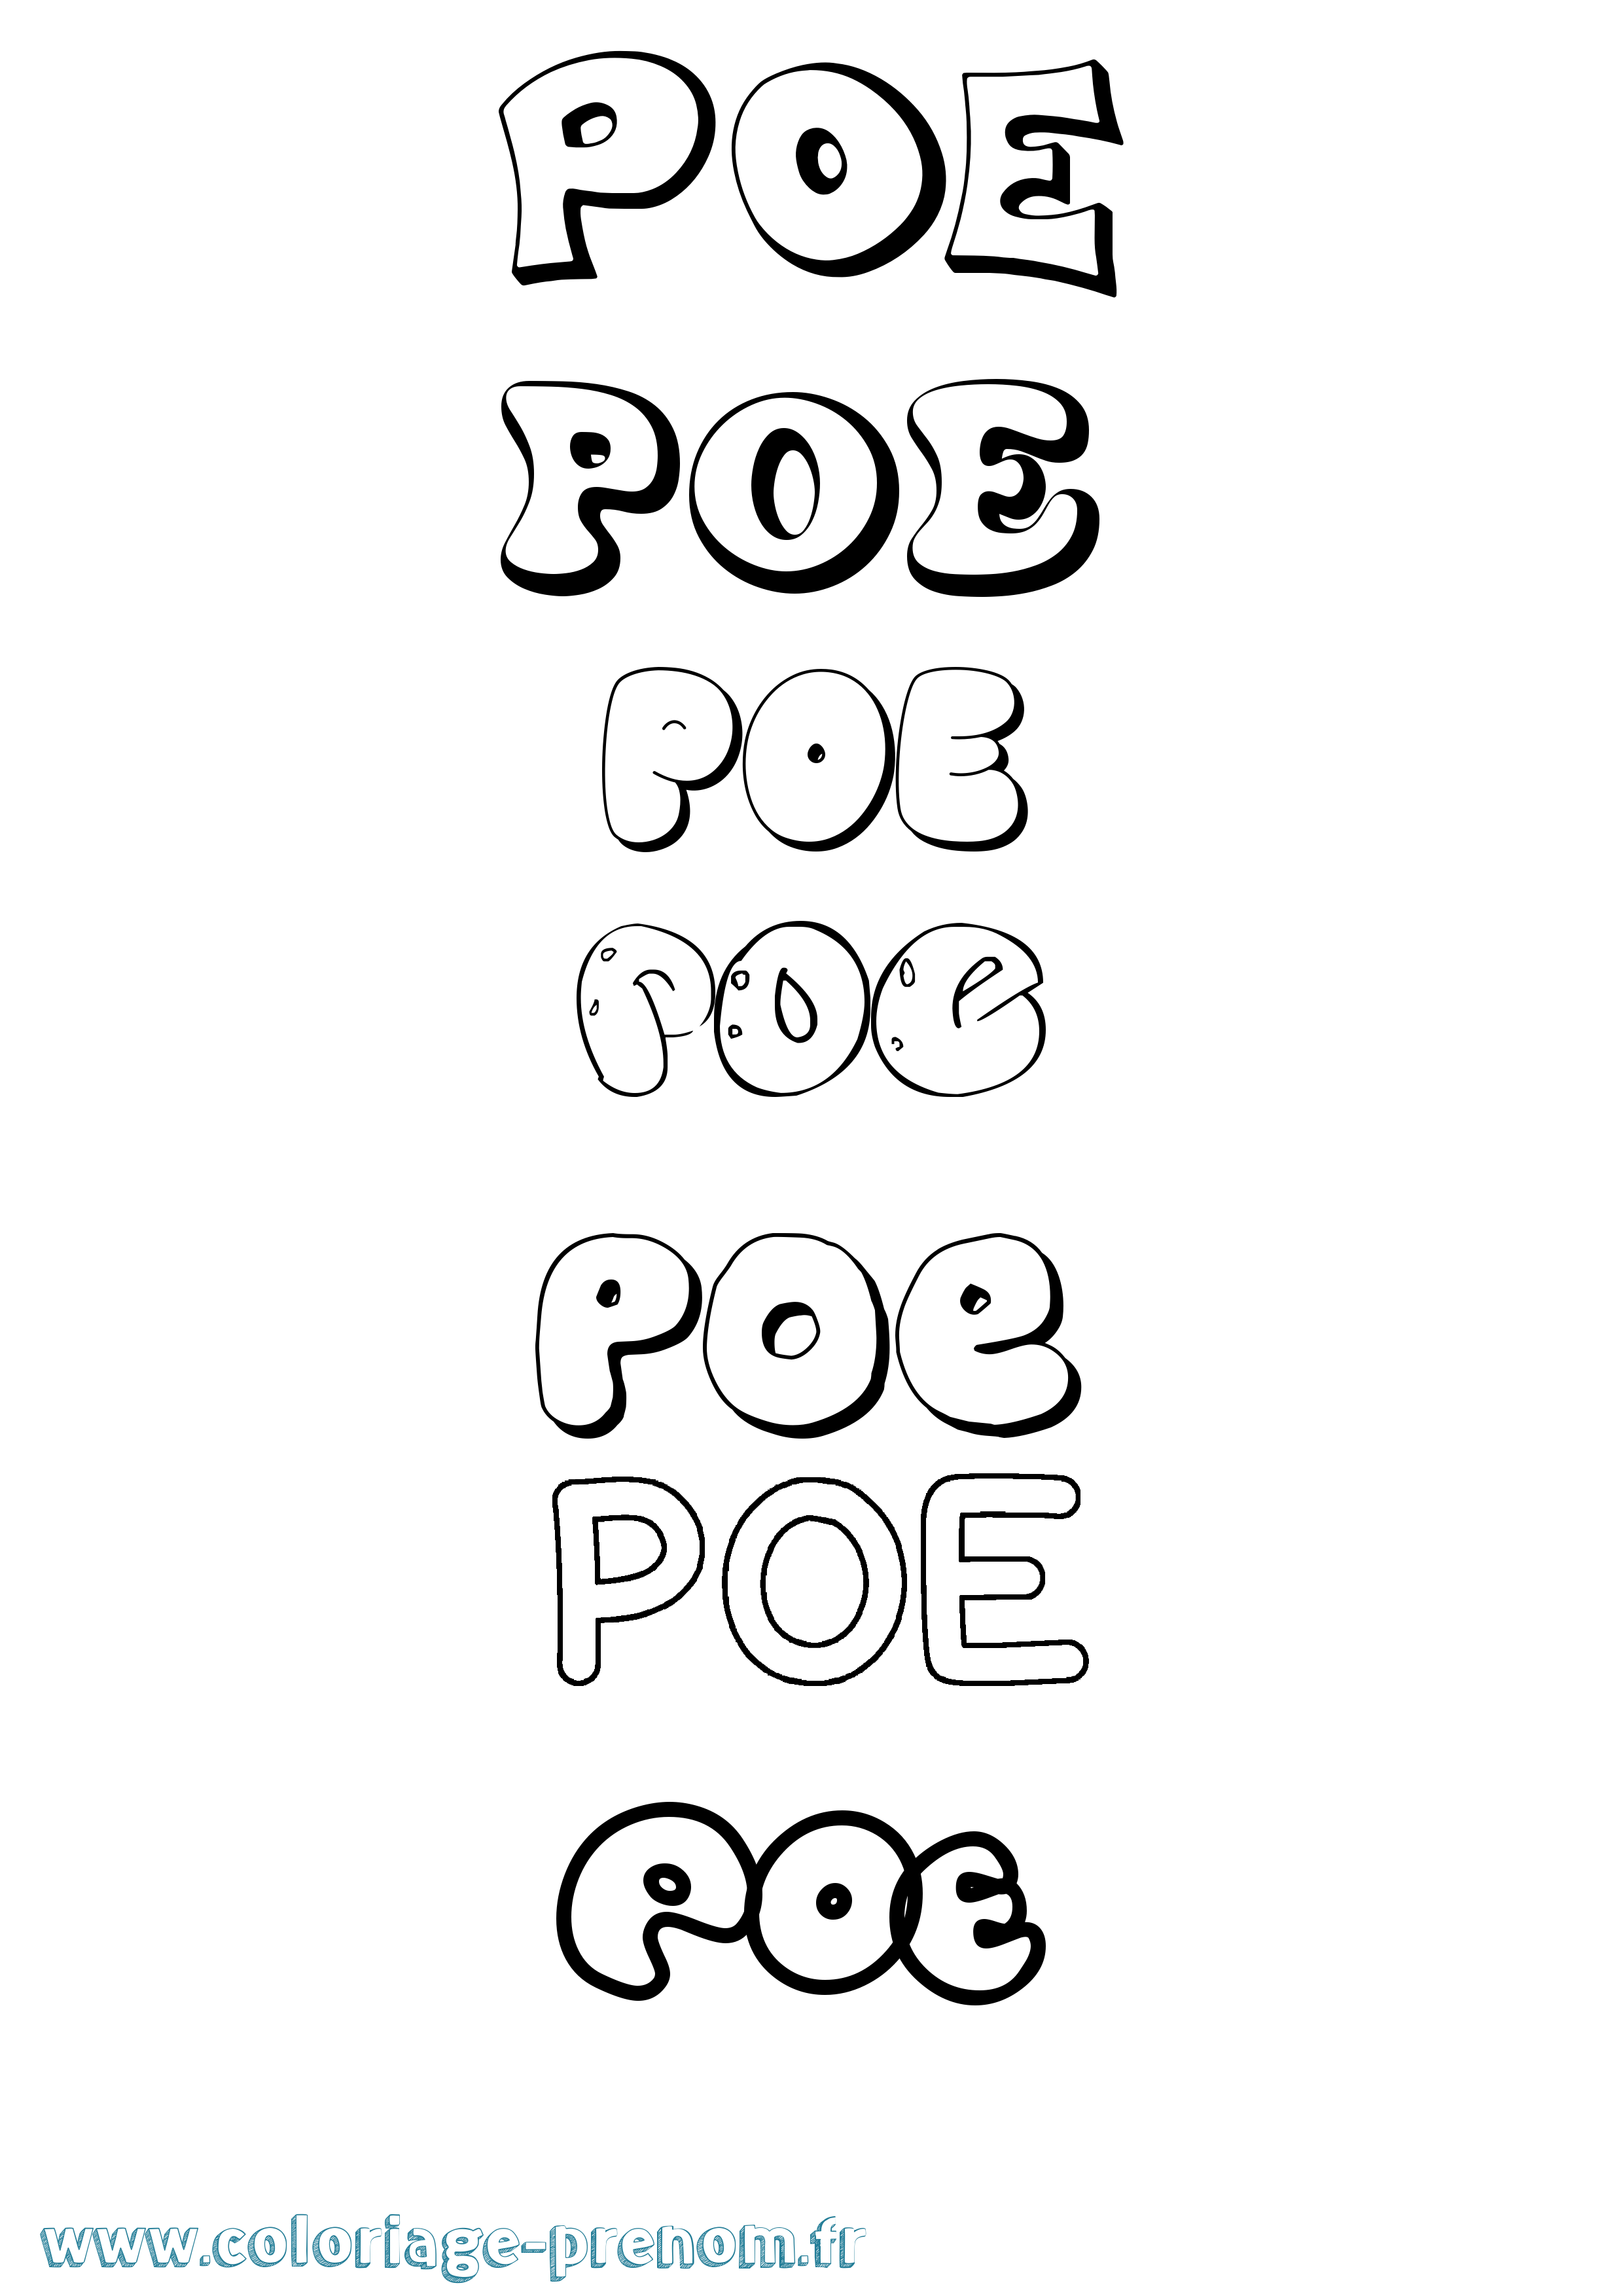 Coloriage prénom Poe Bubble